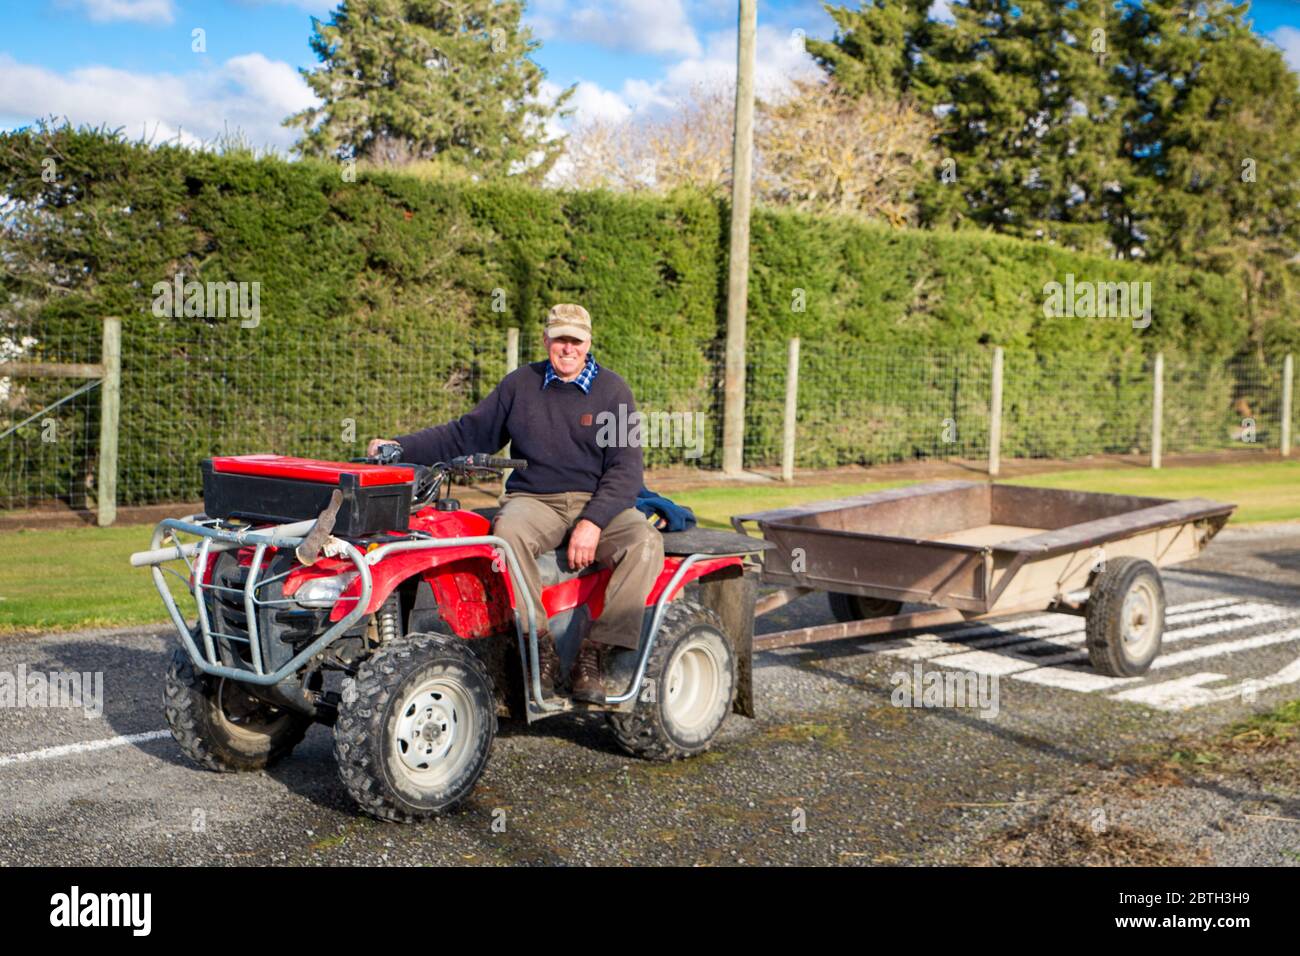 Annat, Canterbury, Nouvelle-Zélande, mai 26 2020 : un agriculteur à la retraite lance une remorque derrière son quad pour recueillir des haies sur une route rurale Banque D'Images